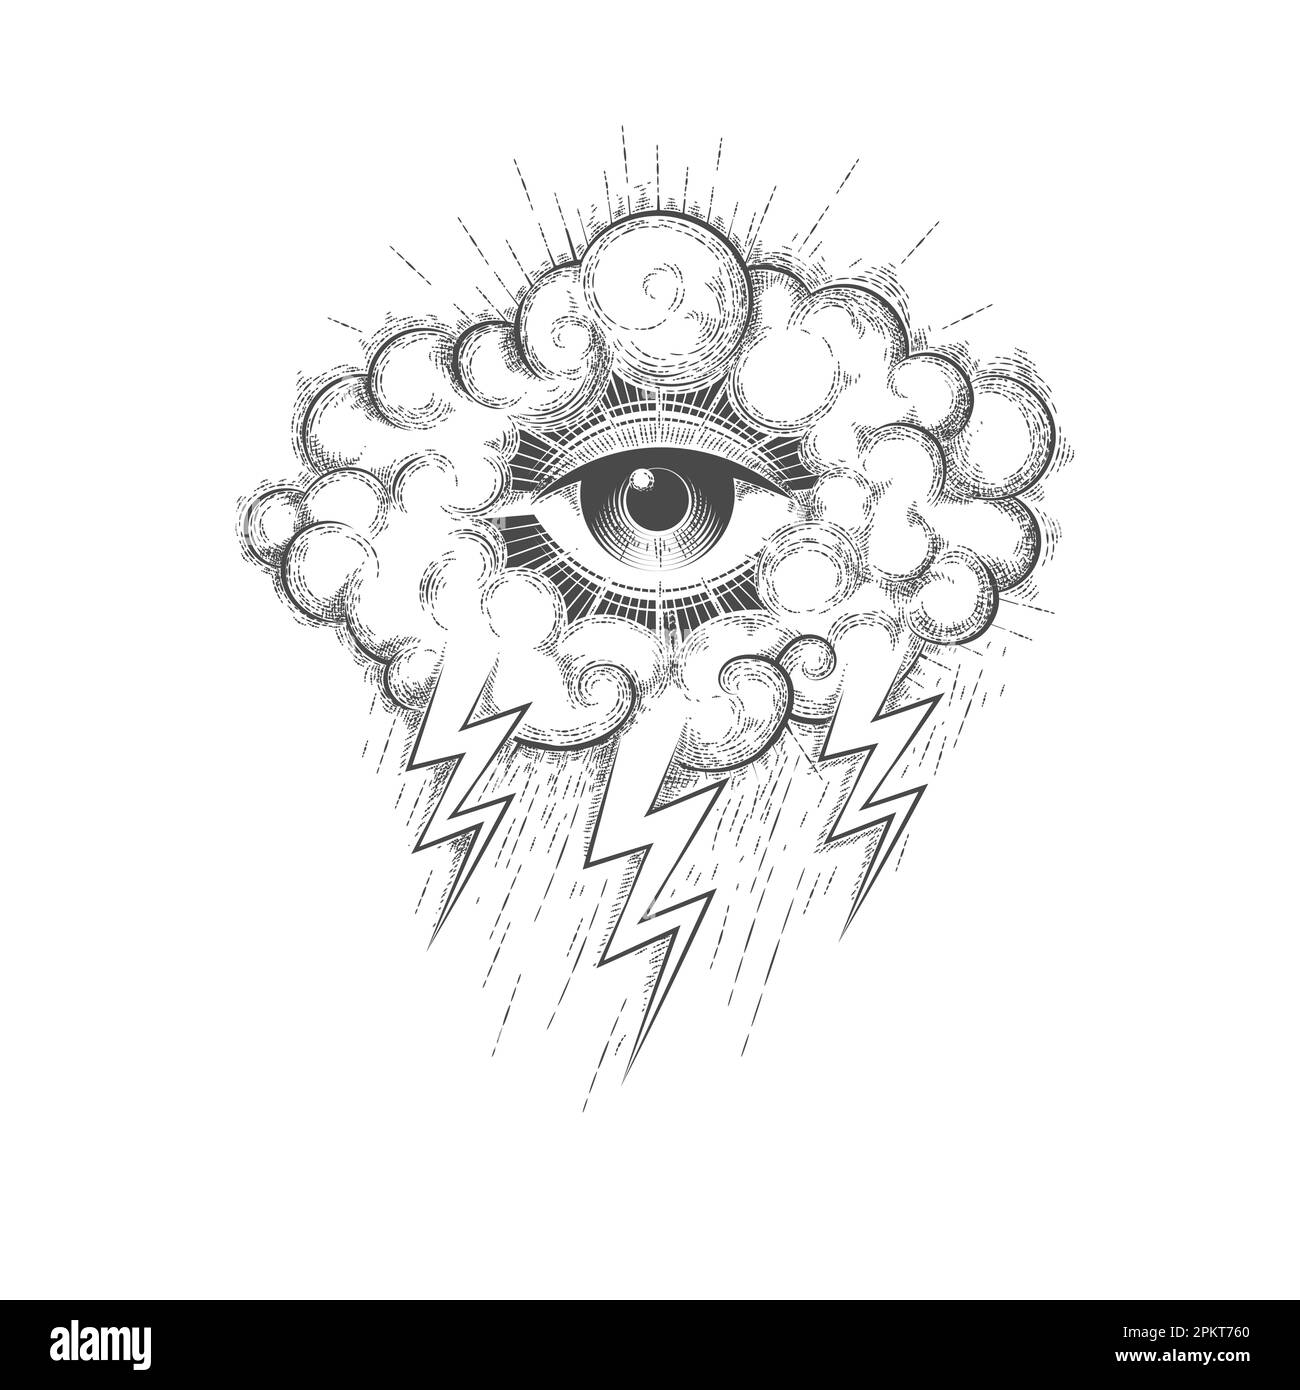 Tatuaggio di tutti gli occhi che vedono in una nuvola con le luci isolate su sfondo bianco. Illustrazione vettoriale. Illustrazione Vettoriale